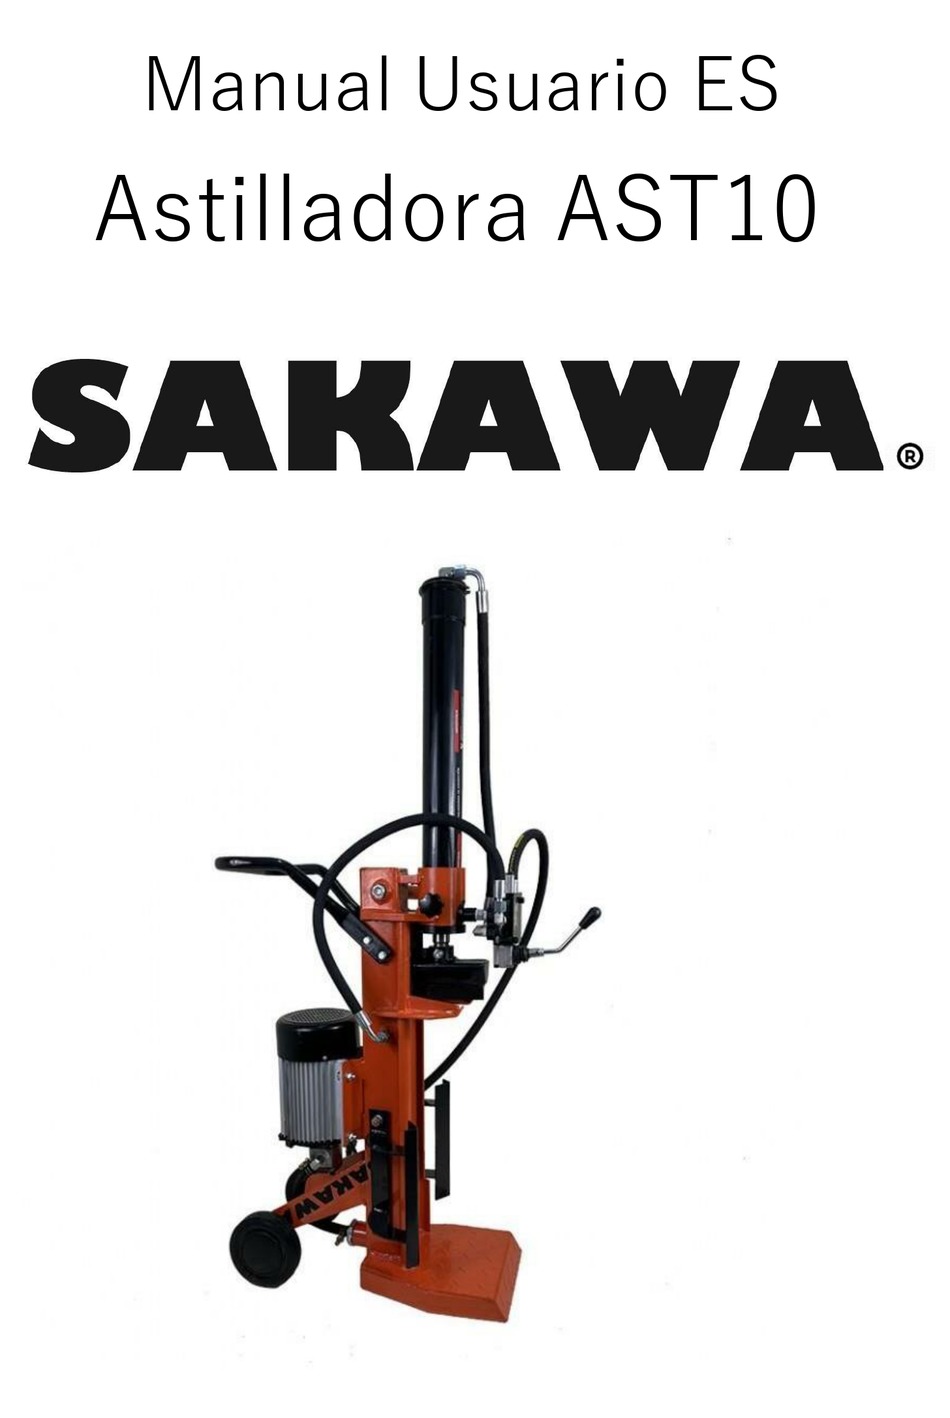 SAKAWA AST10 USER MANUAL Pdf Download